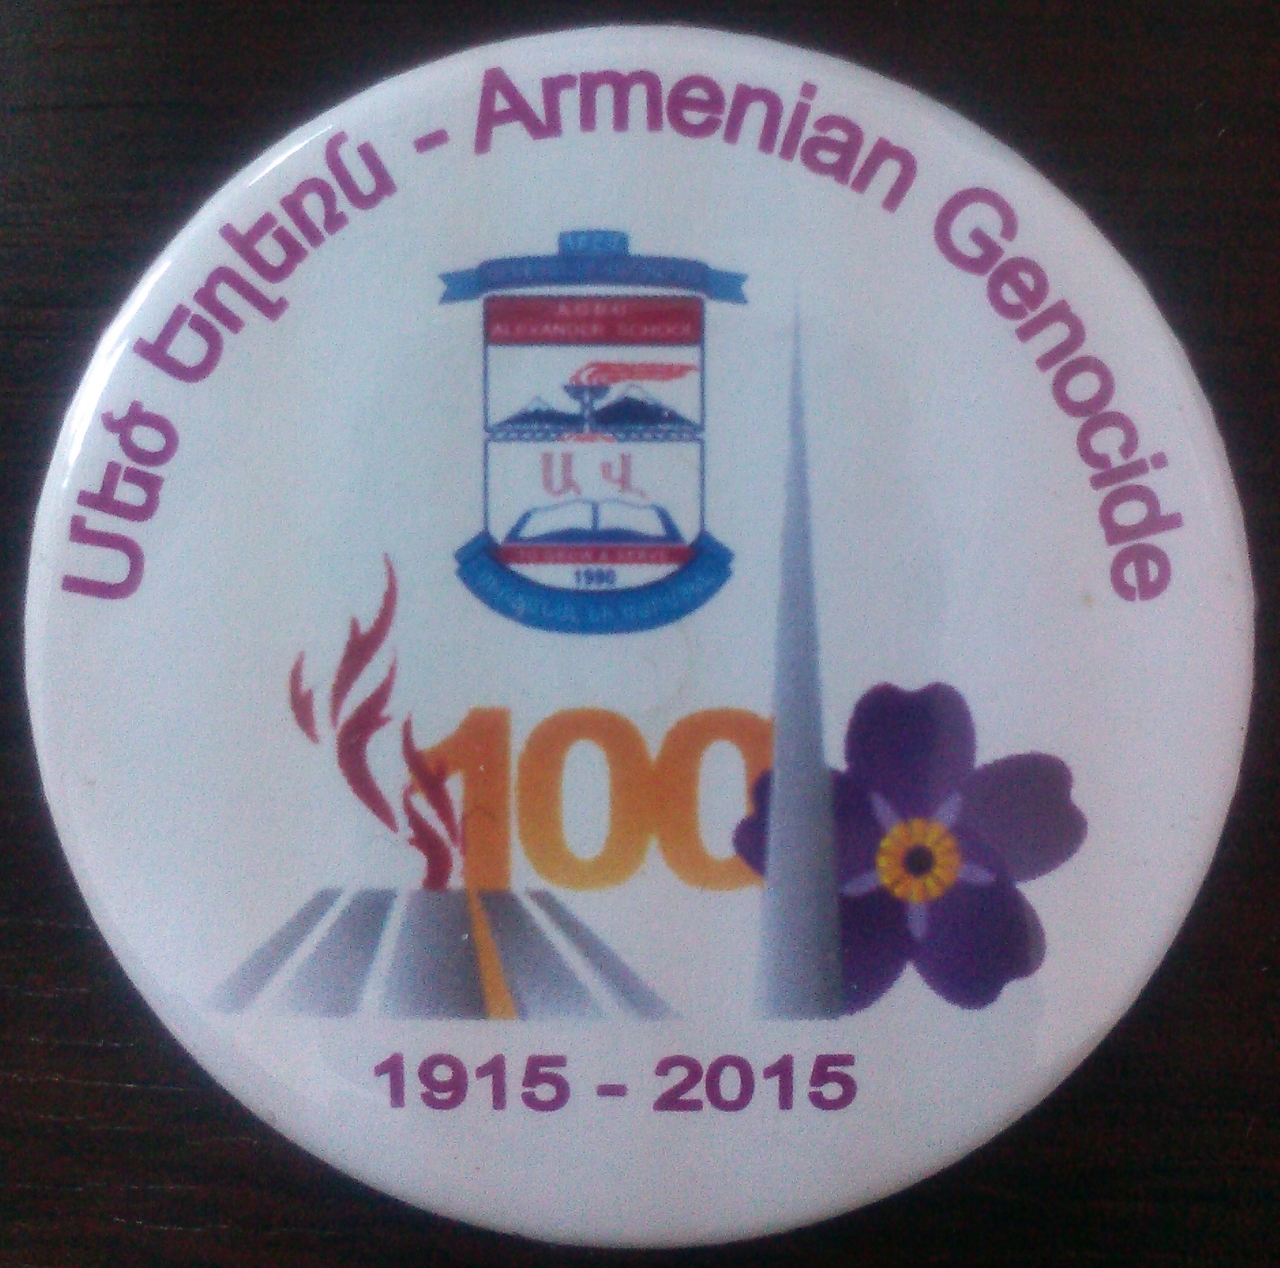  Հայոց ցեղասպանության 100-ամյակի կրծքանշան